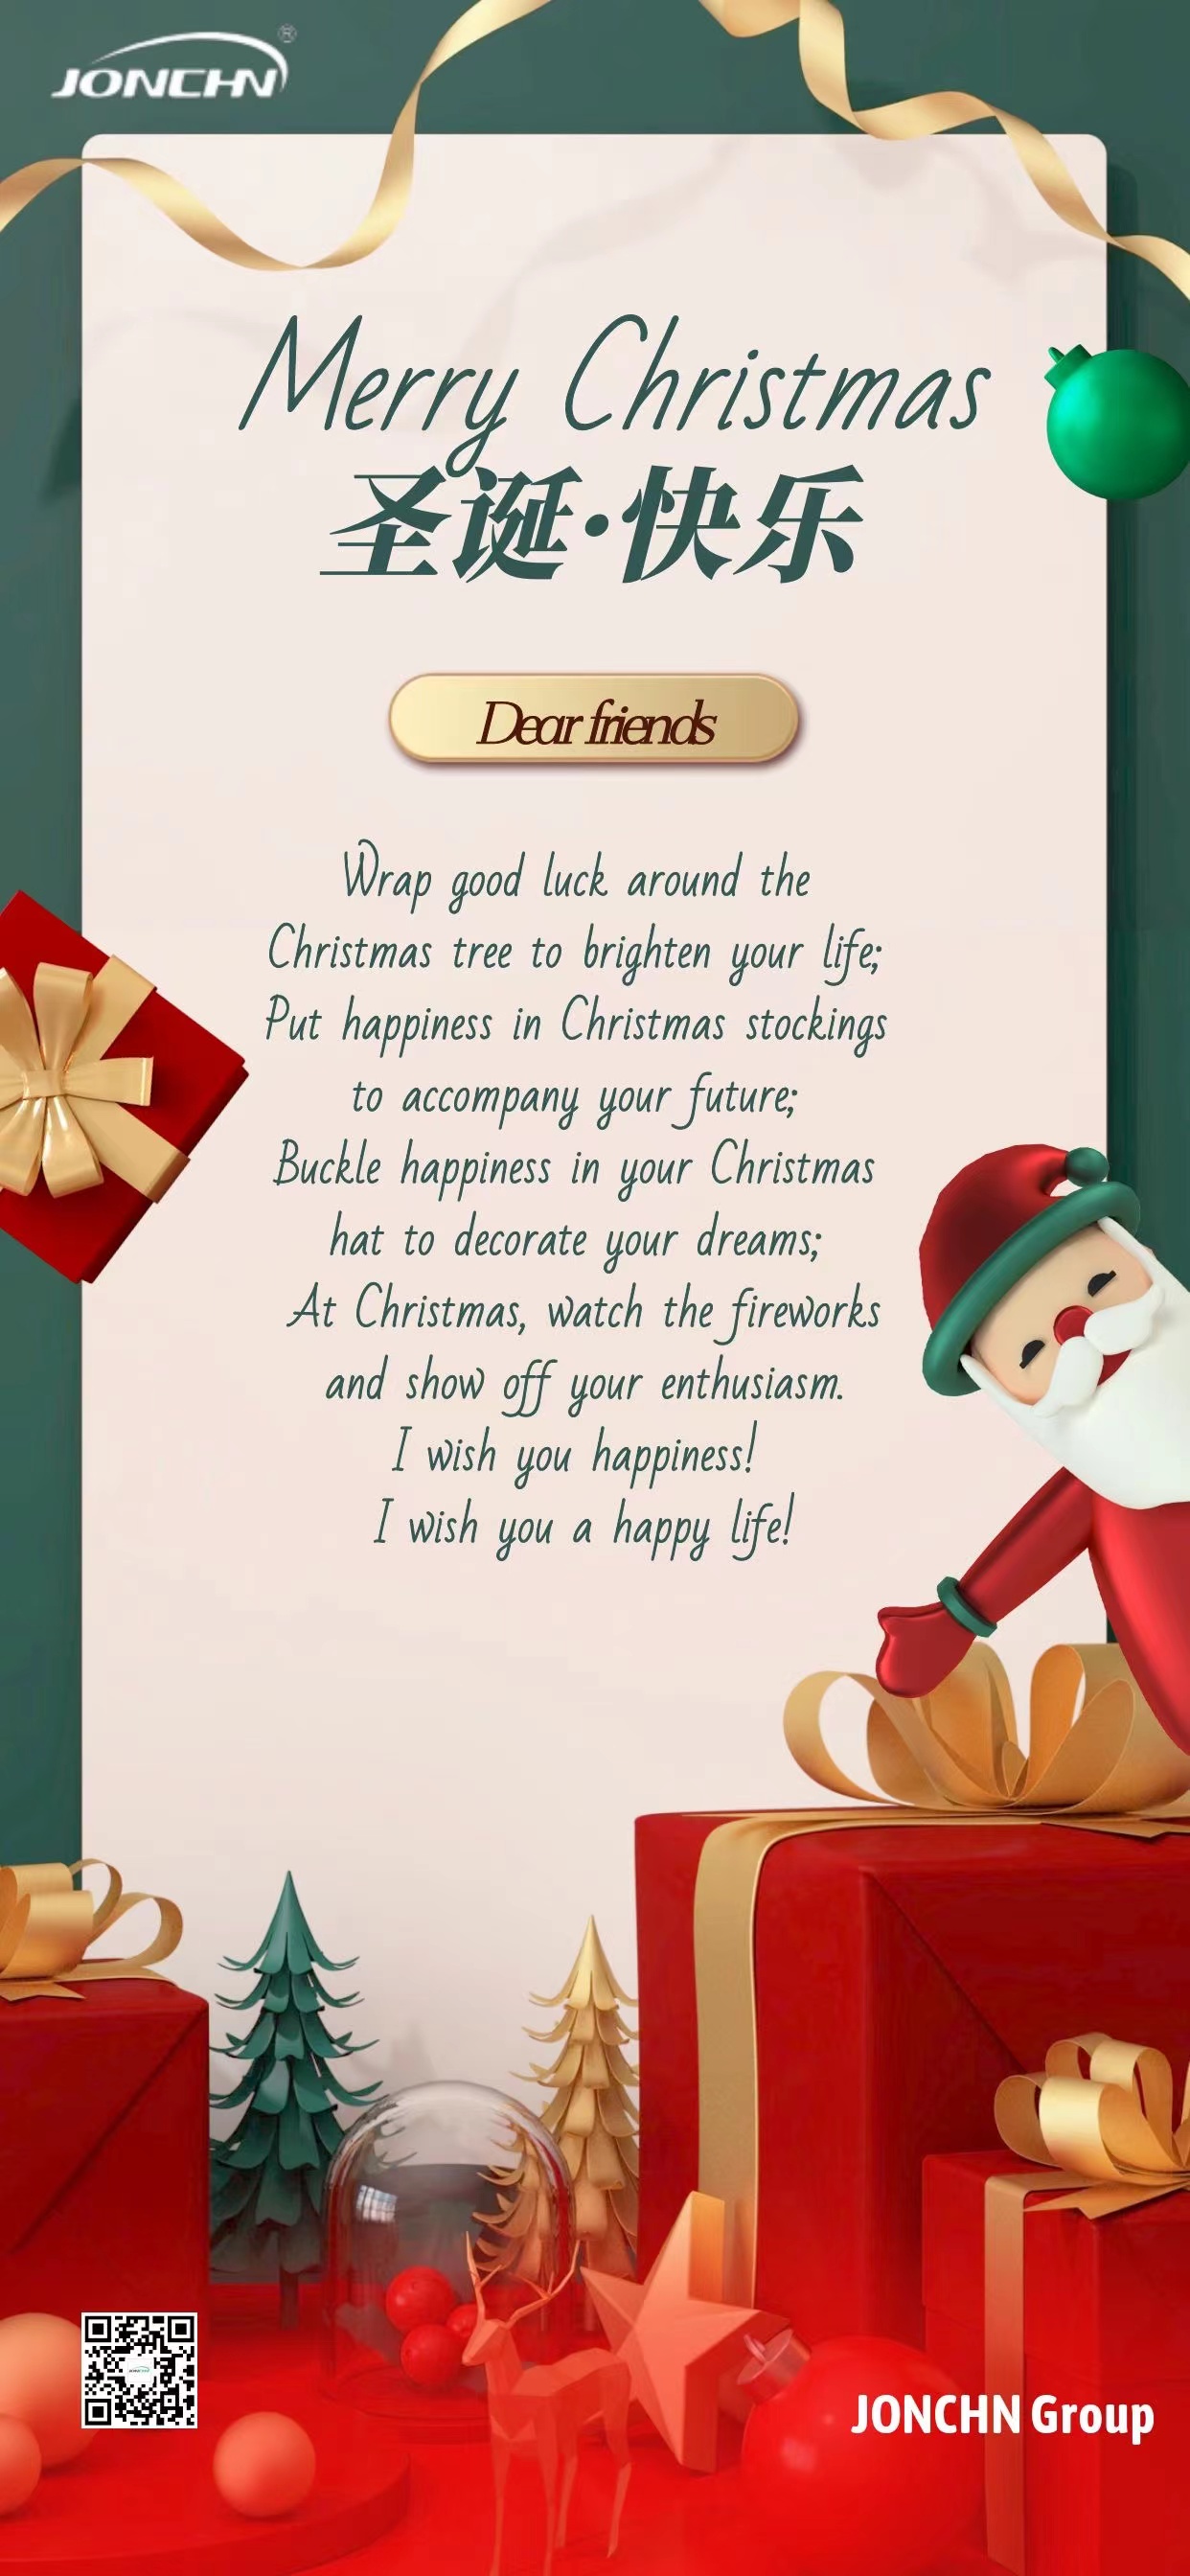 મેરી ક્રિસમસ!JONCHN ગ્રુપ તમને સુખ અને સુખી જીવનની શુભેચ્છાઓ!